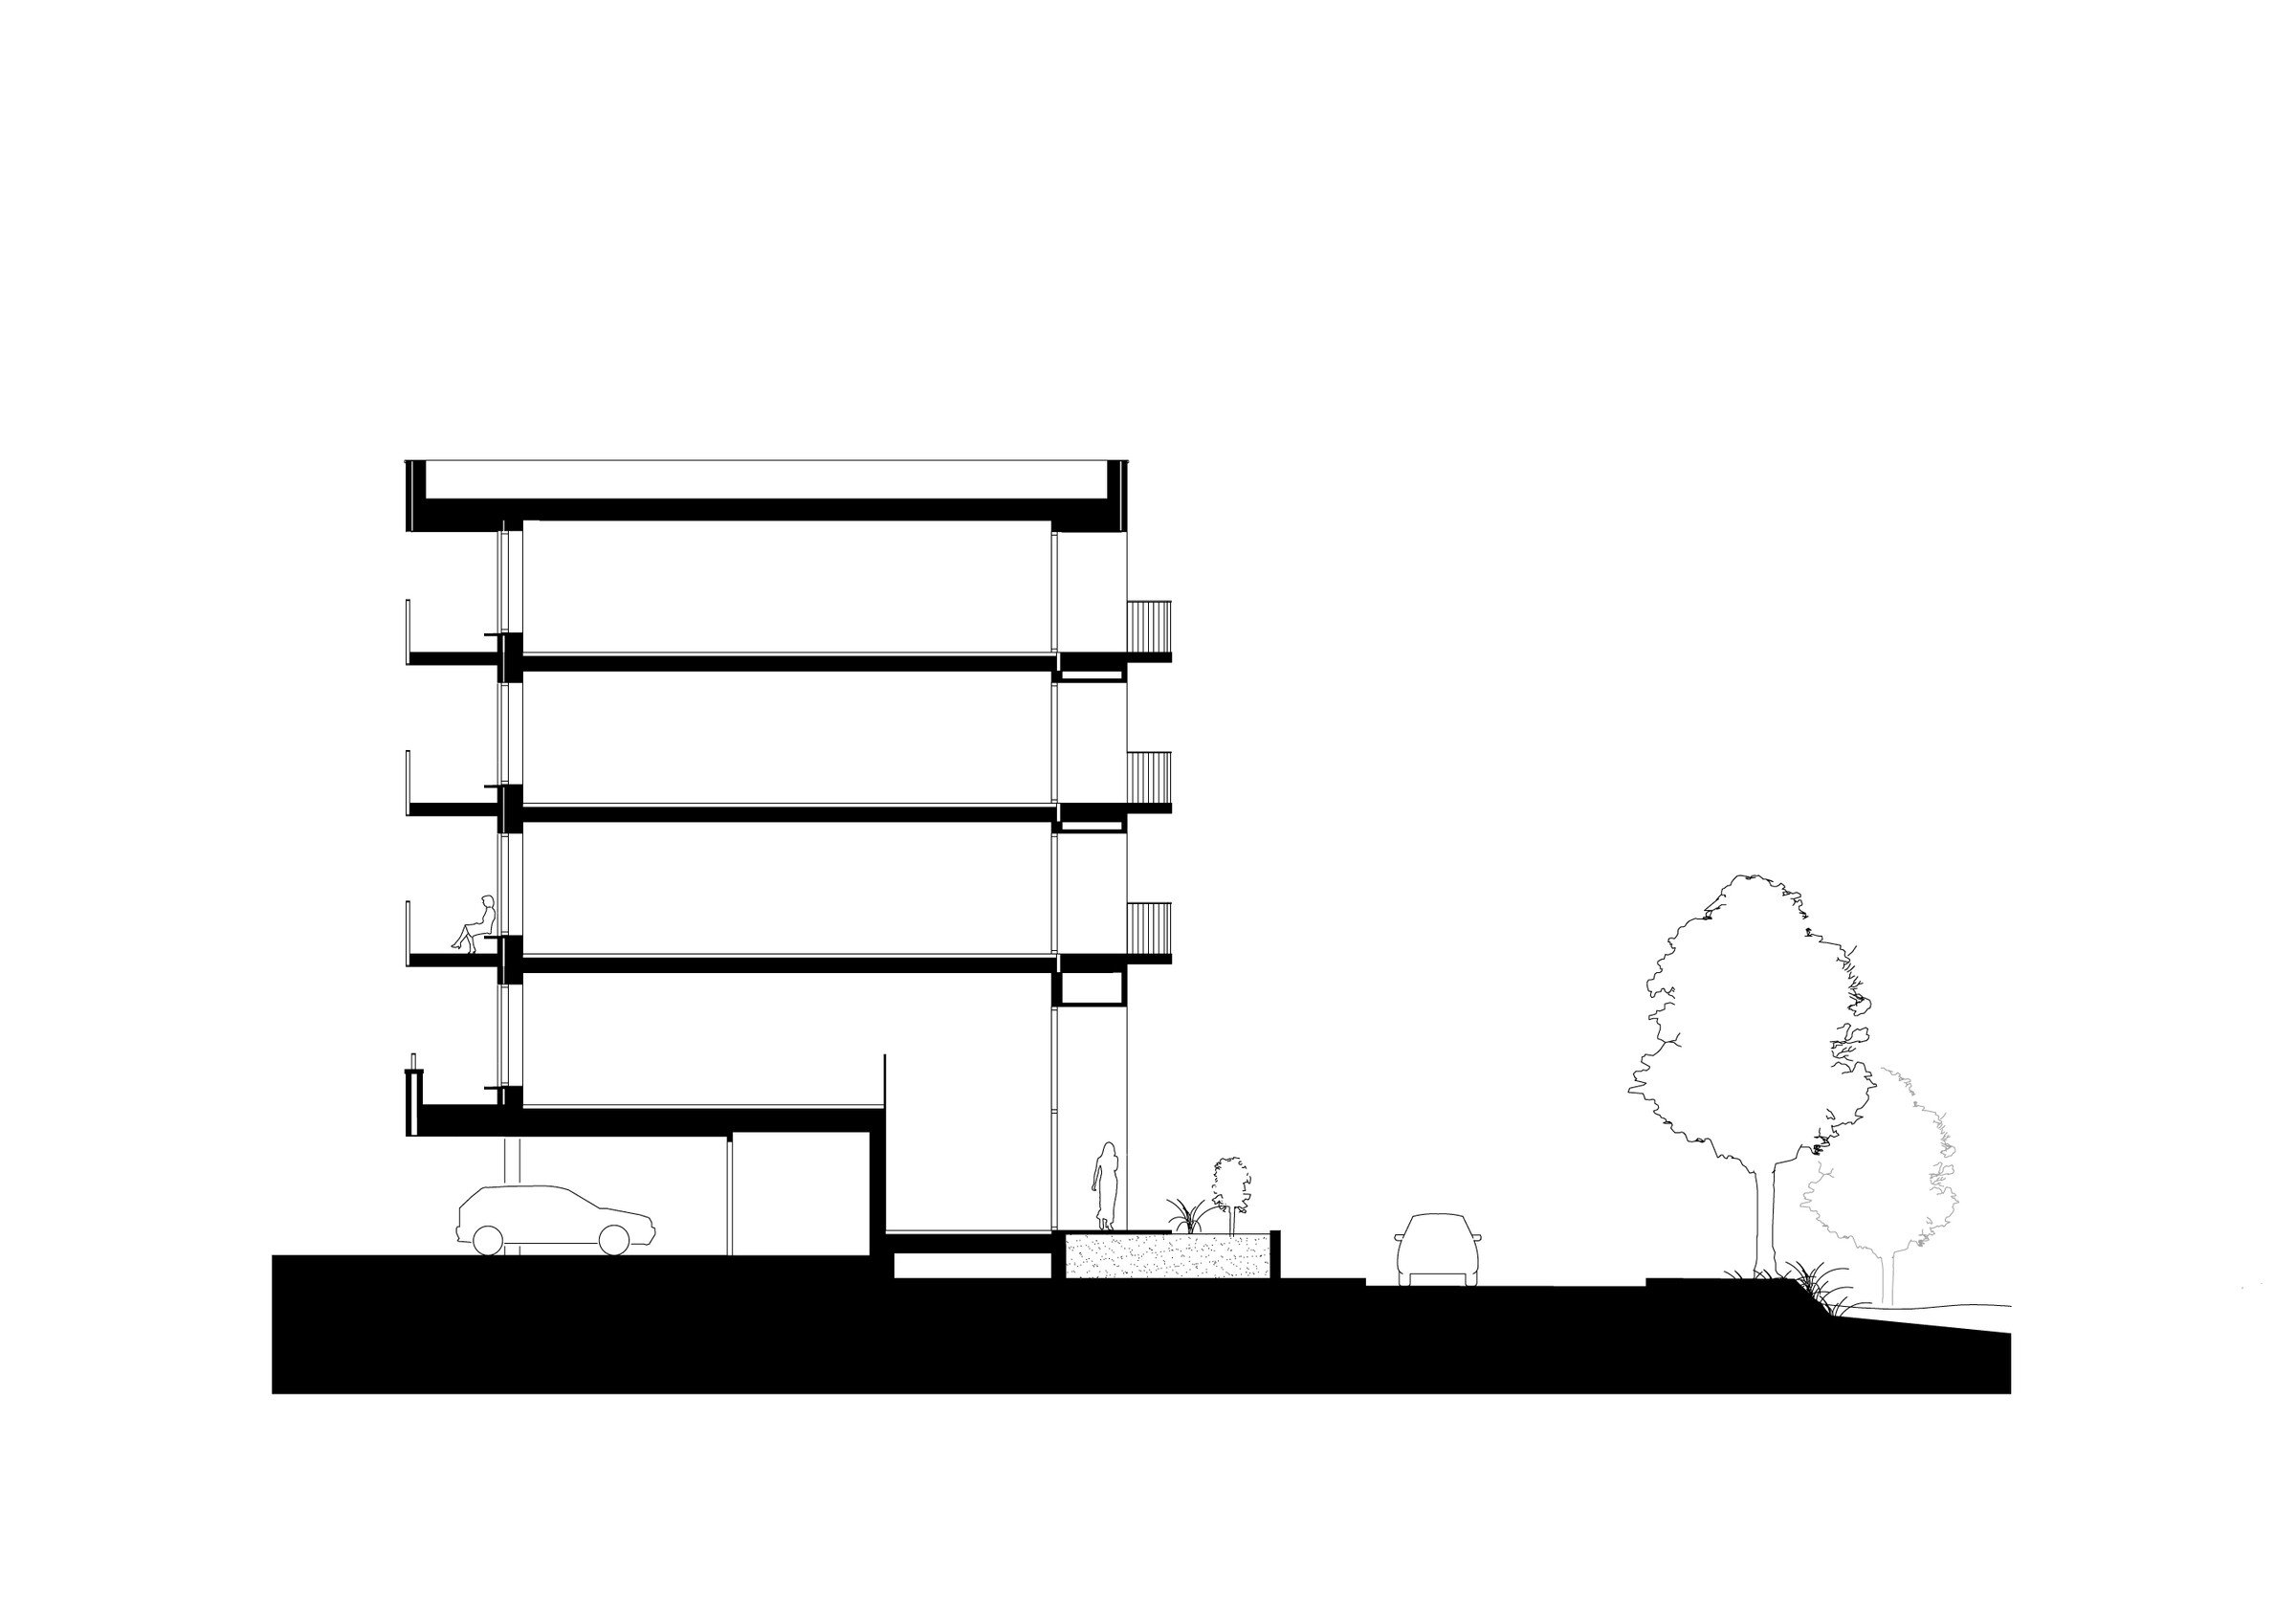 03-Zecc_Architecten-Rijnvliet-apartments-section.jpg